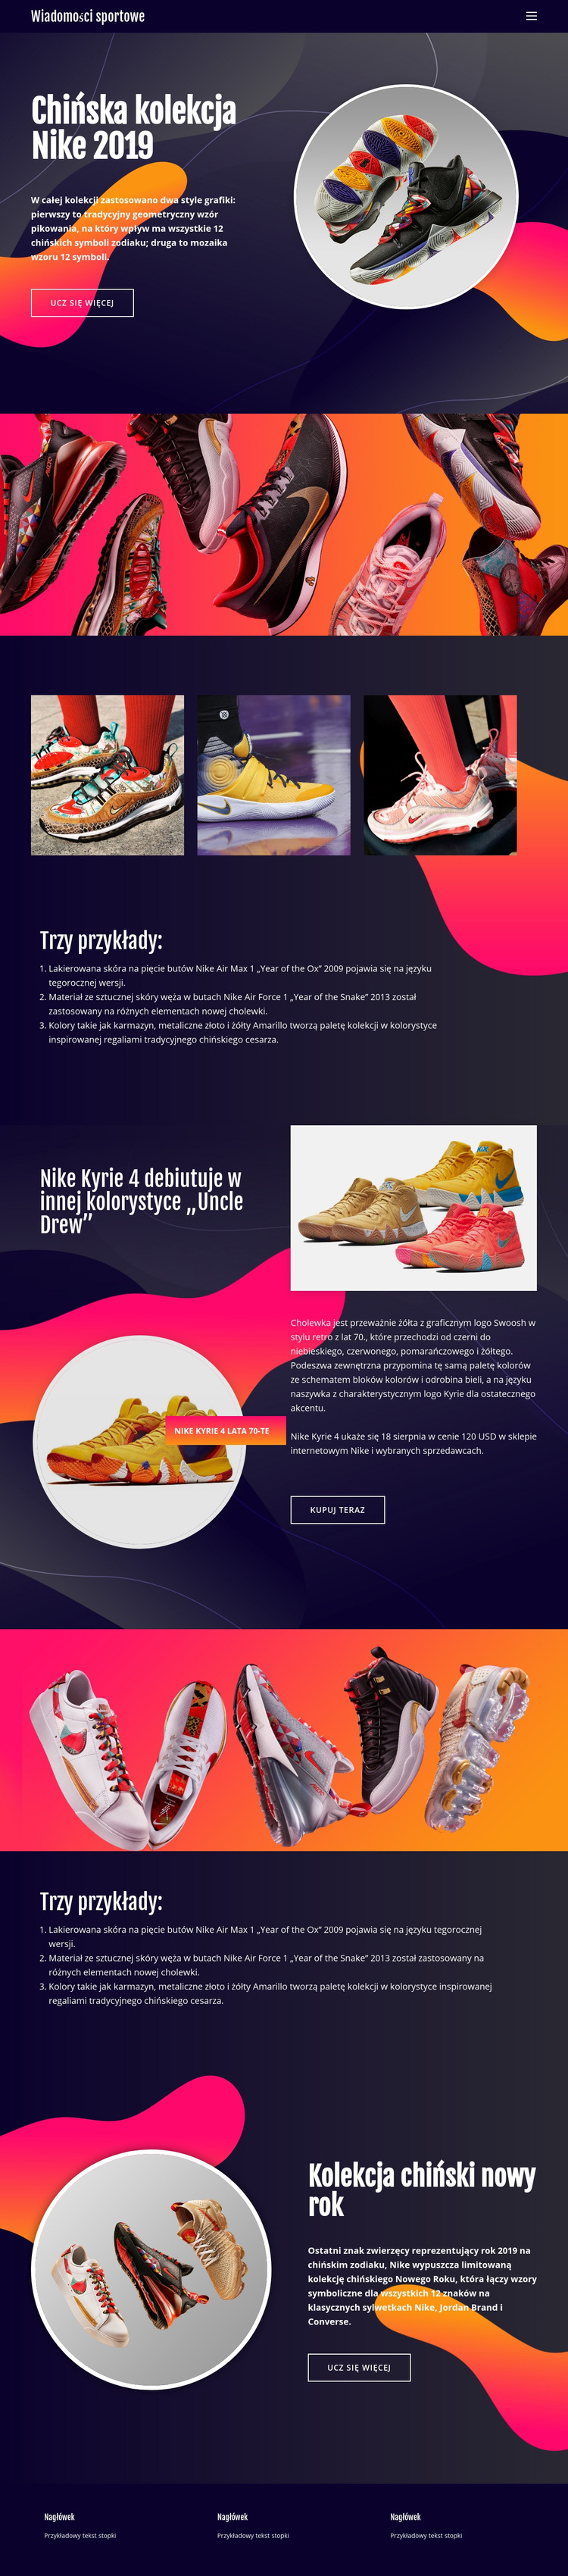 Kolekcja Nike Szablon witryny sieci Web